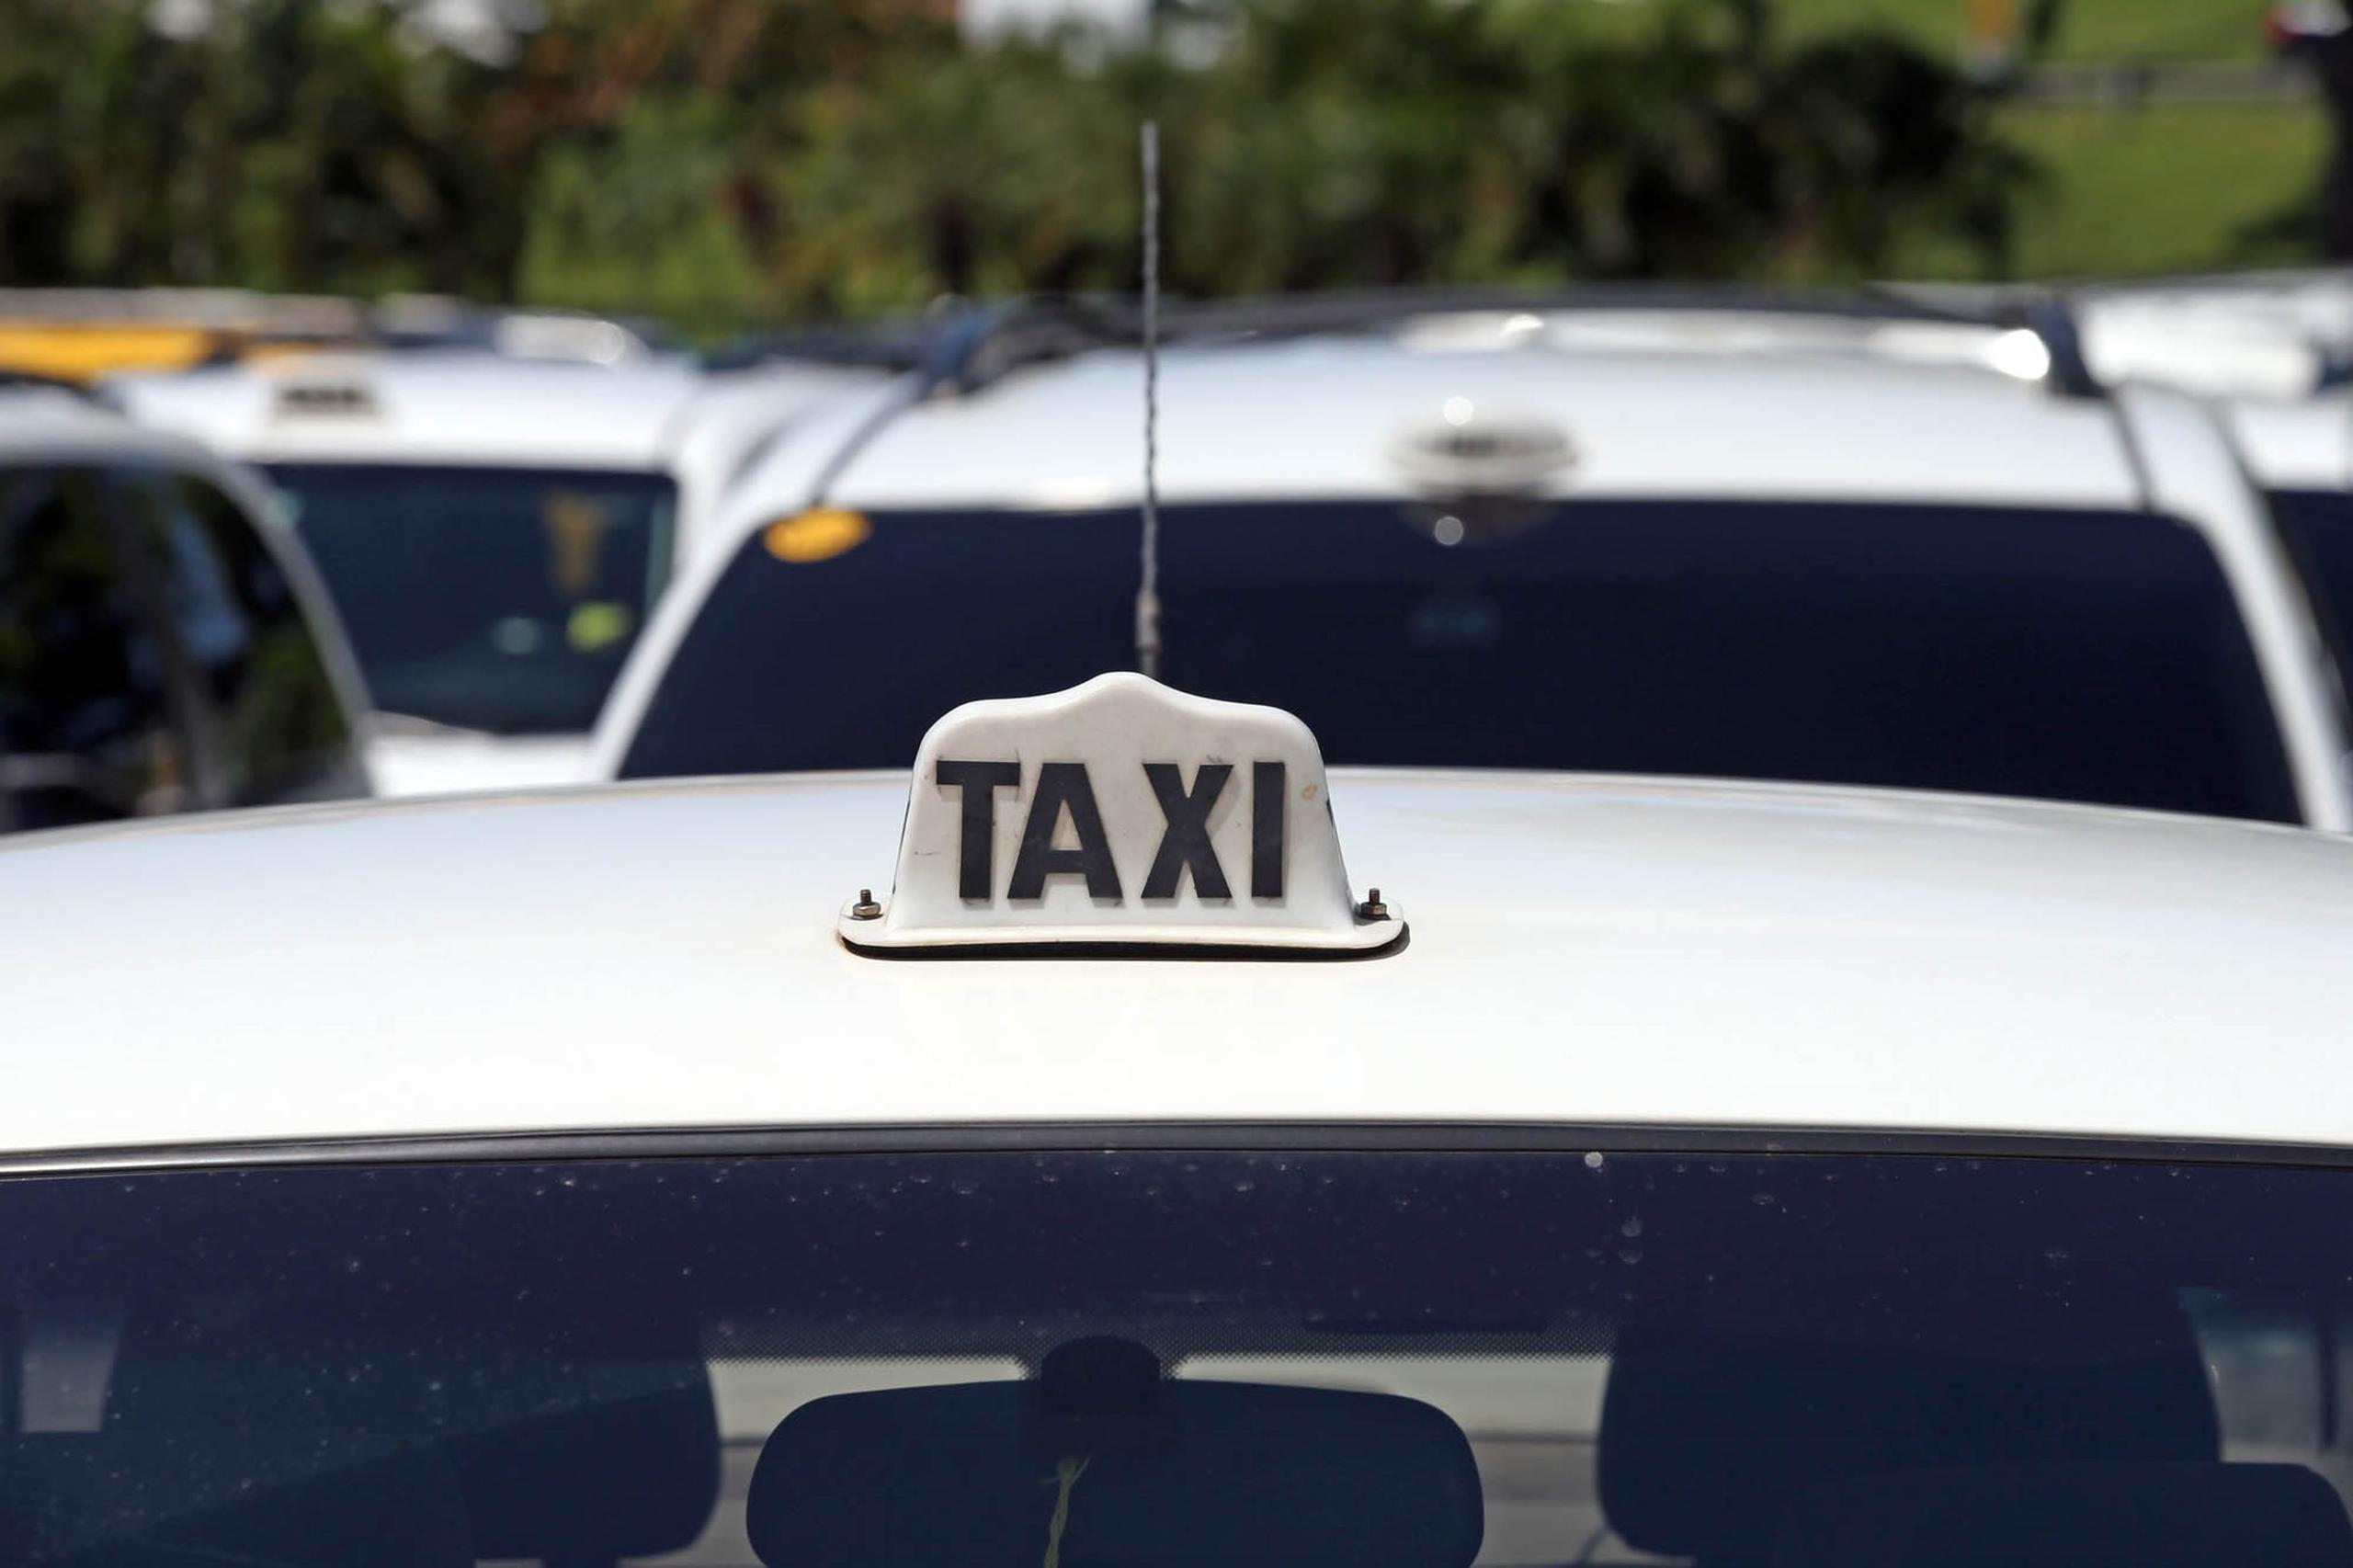 Según cifras oficiales, en la Isla hay 1,148 taxis registrados y 1,500 choferes con licencia para manejar estos vehículos.